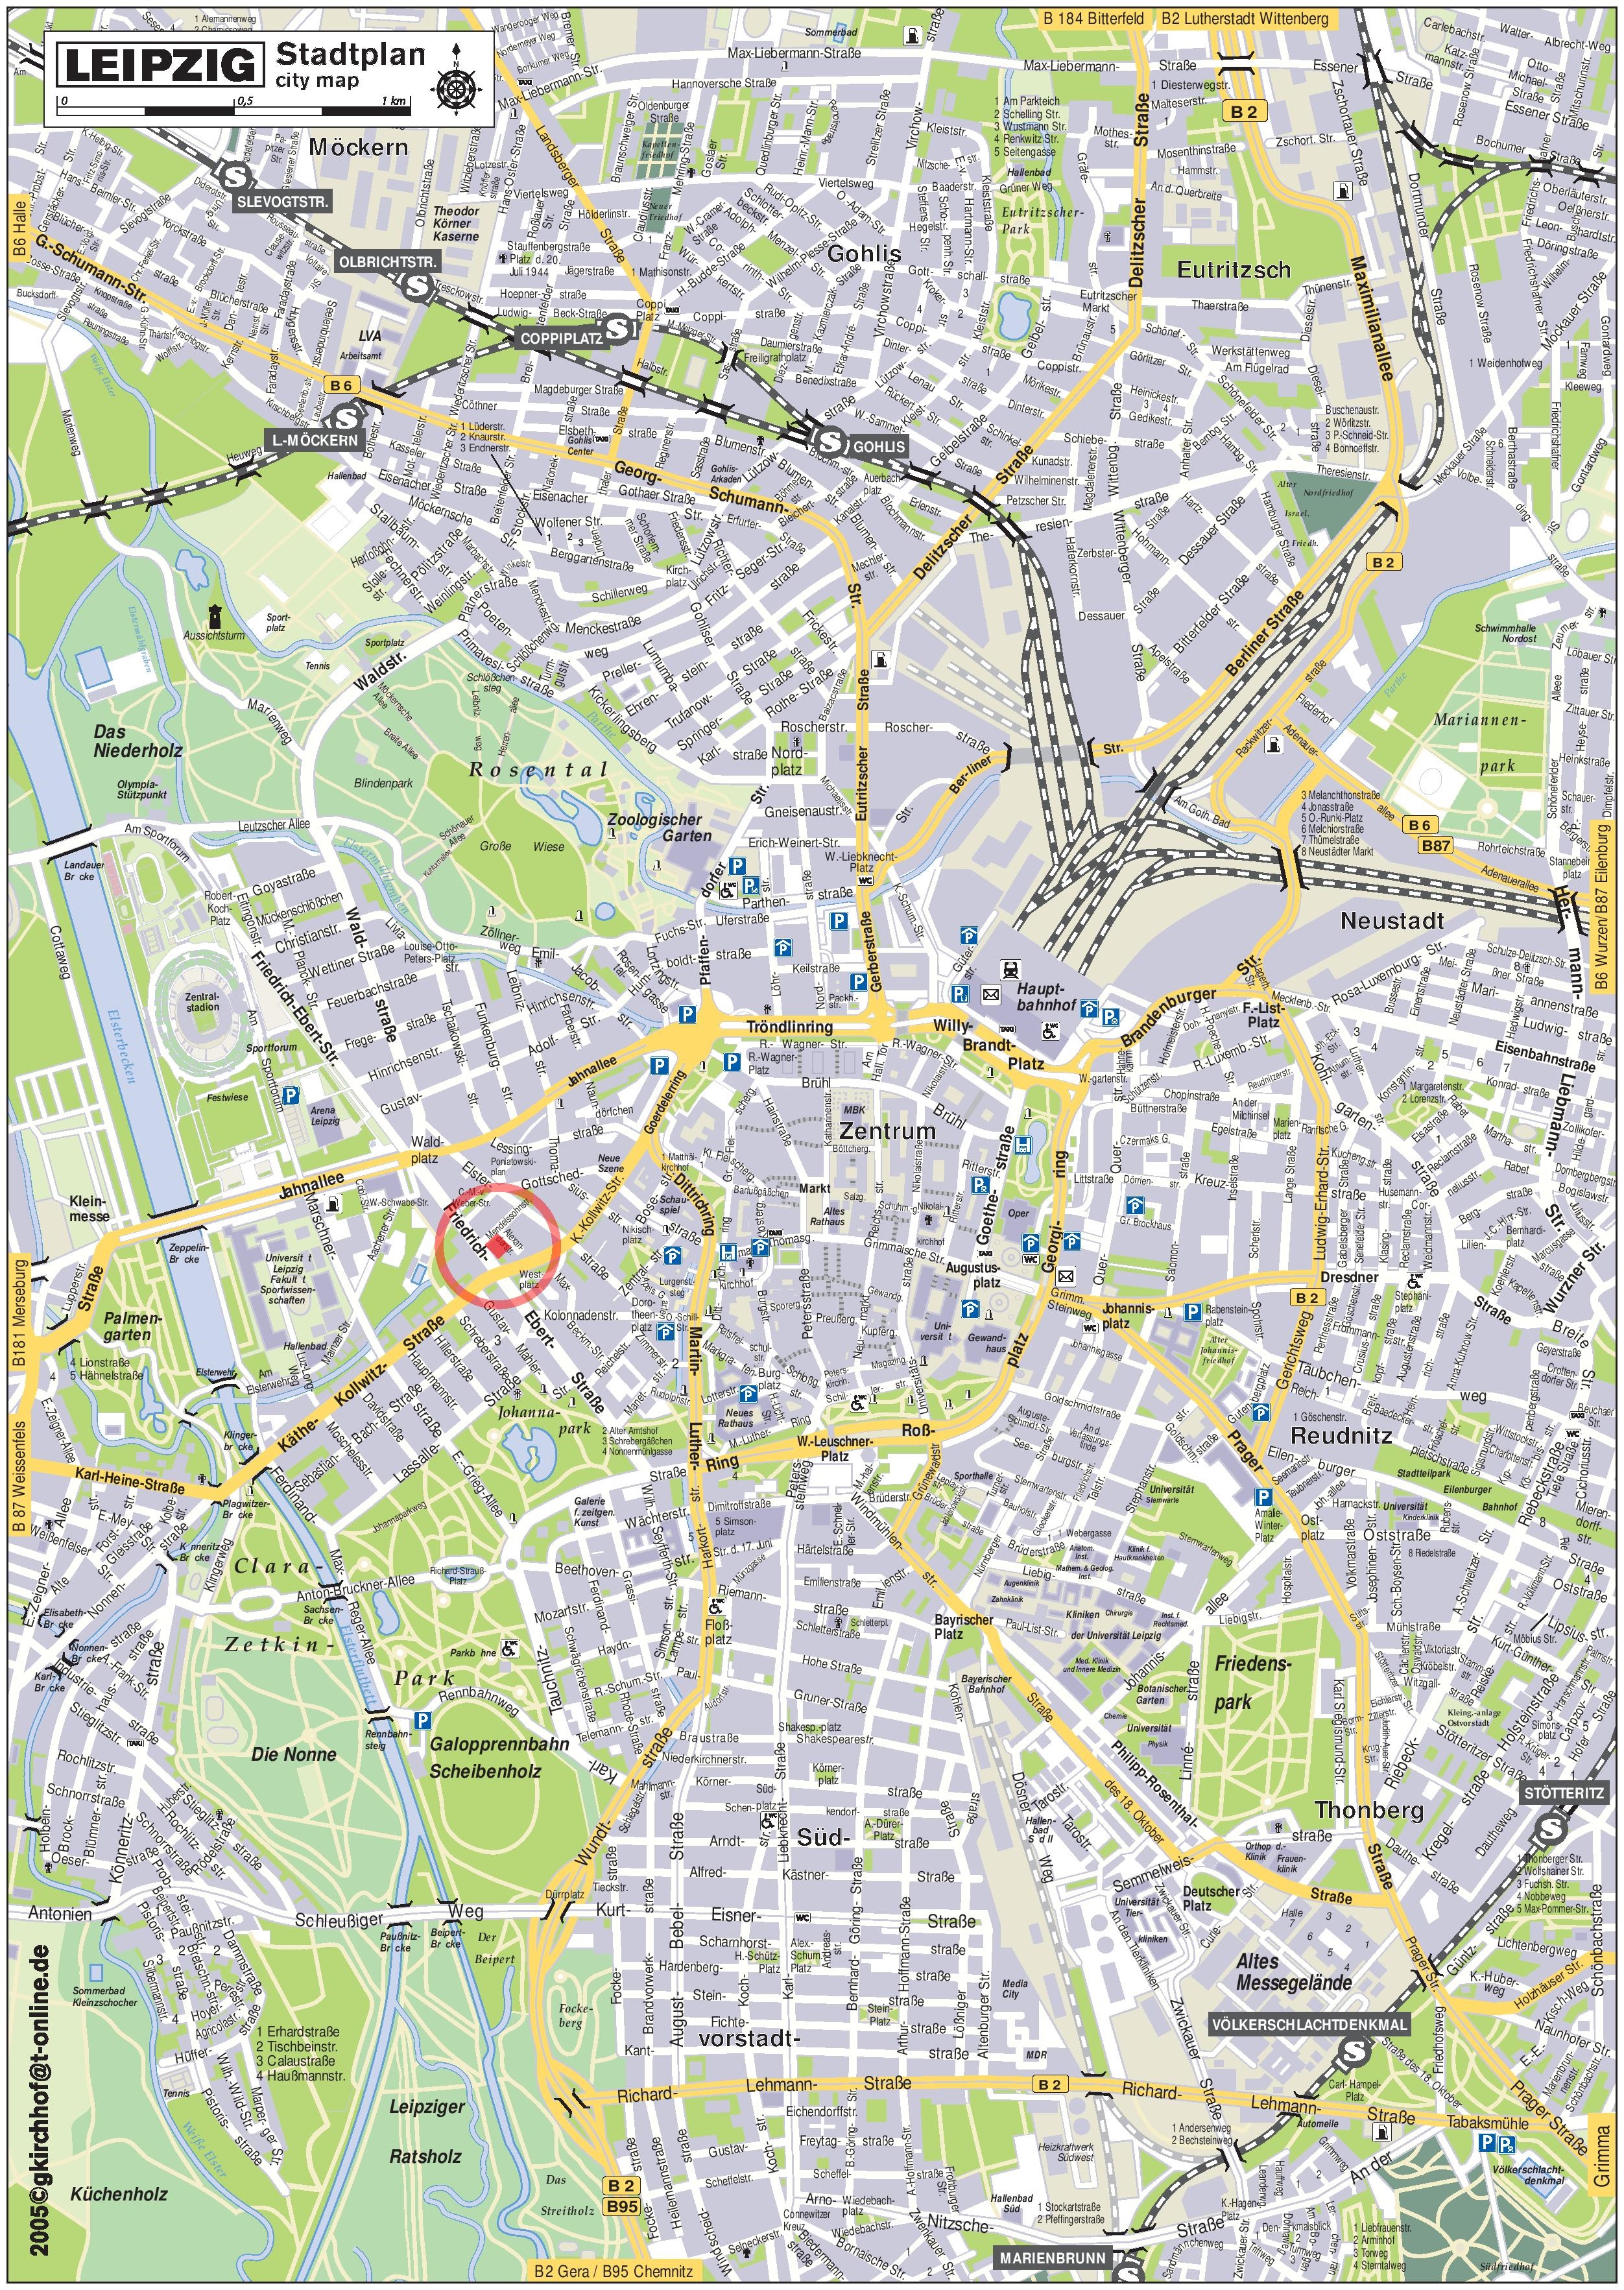 Karte S Bahn Frankfurt